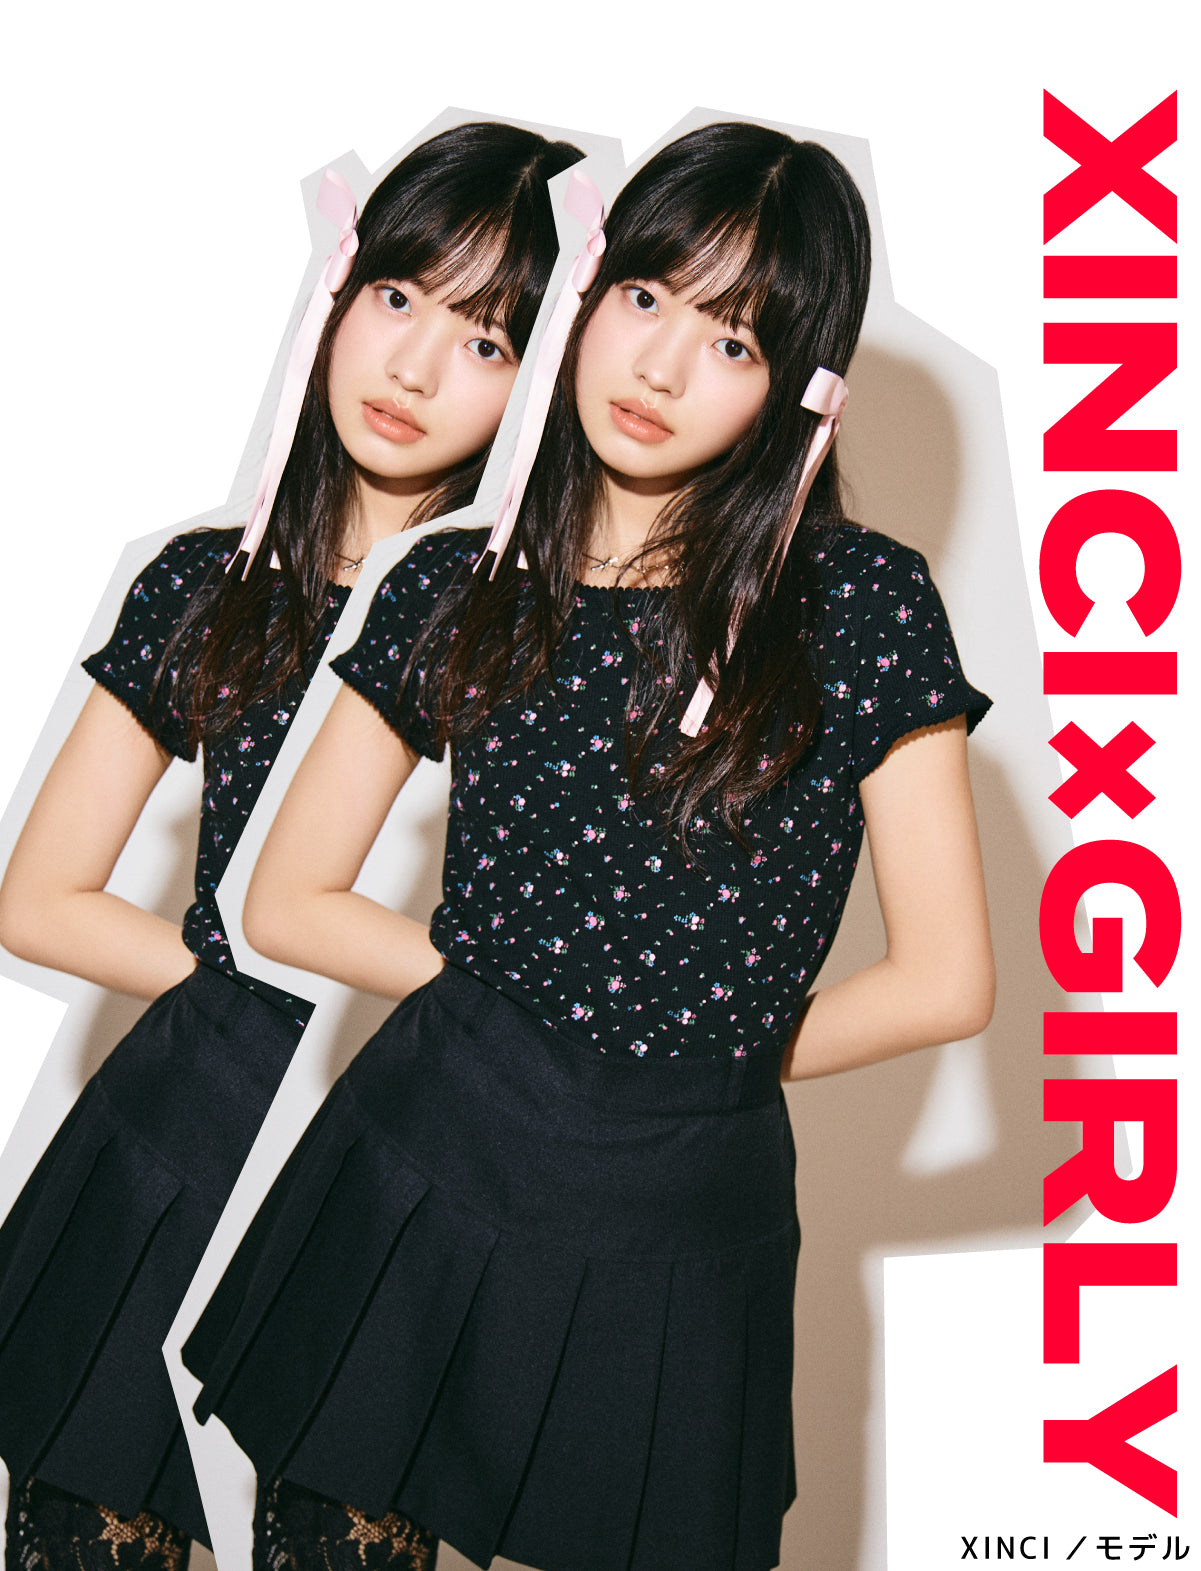 XINCI×GIRLY XINCI/モデル